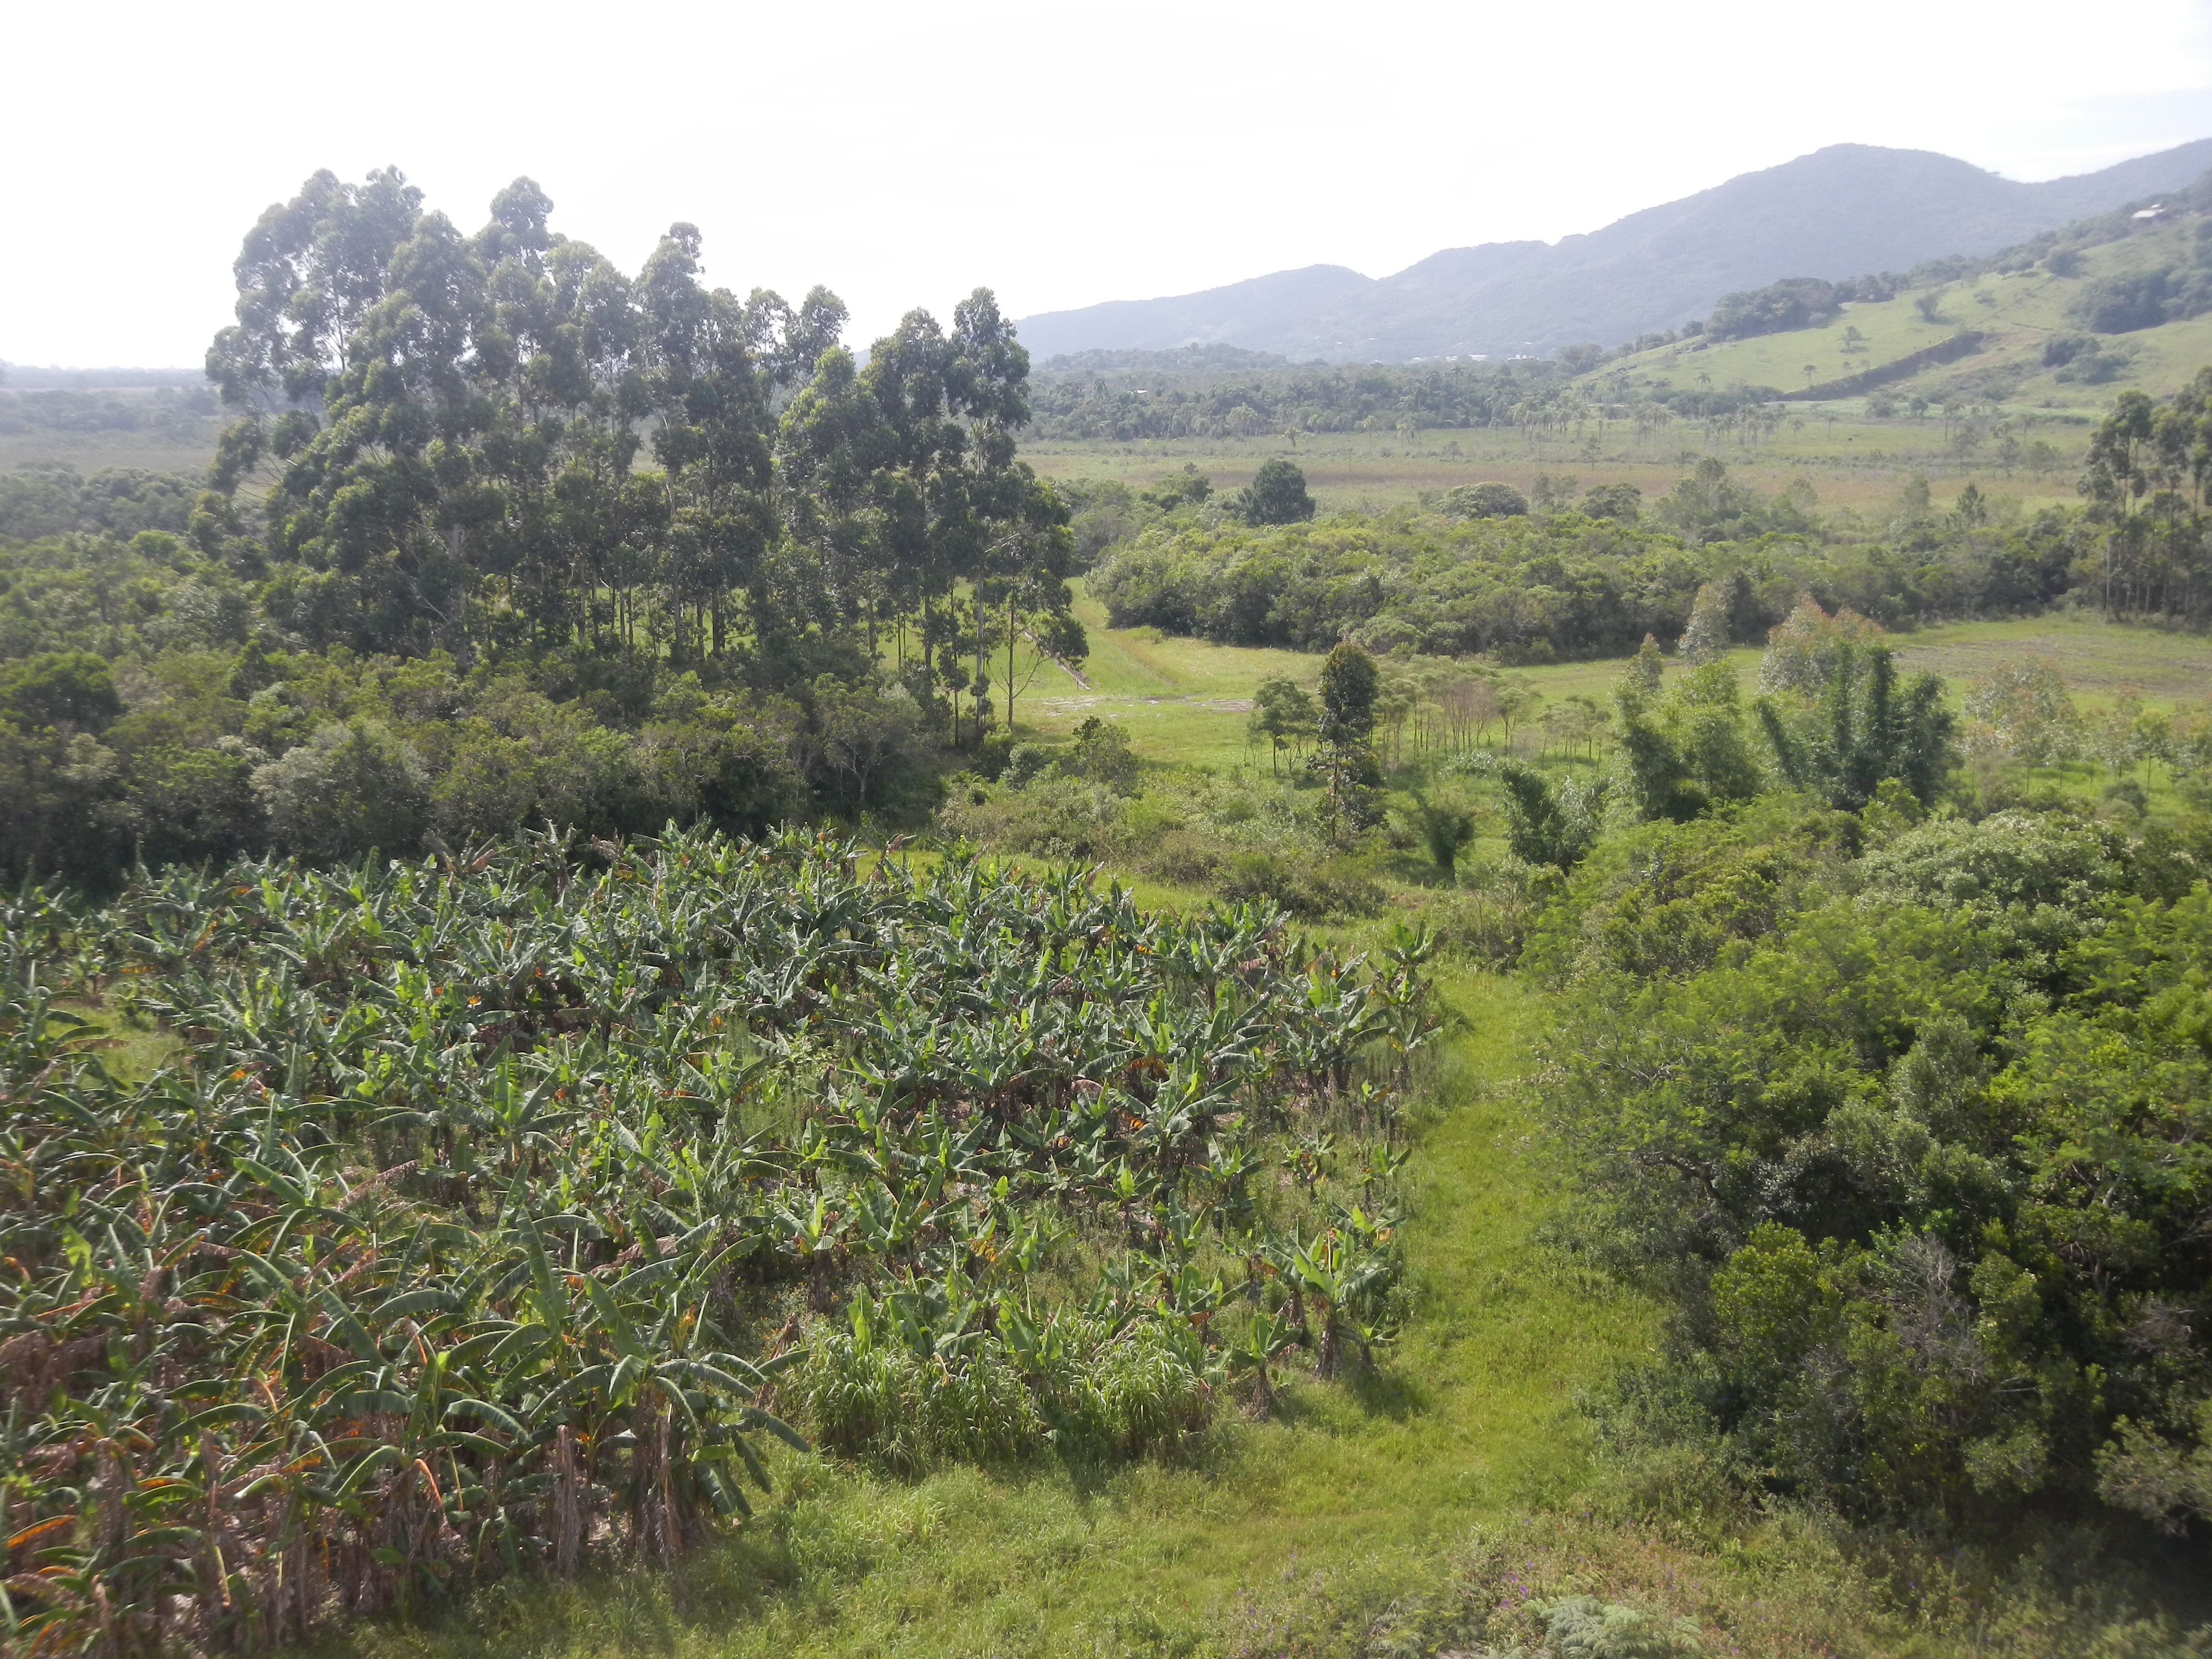 20151216 Fazenda Vista paisagem sudeste silvicultura agroecologi 003.jpg